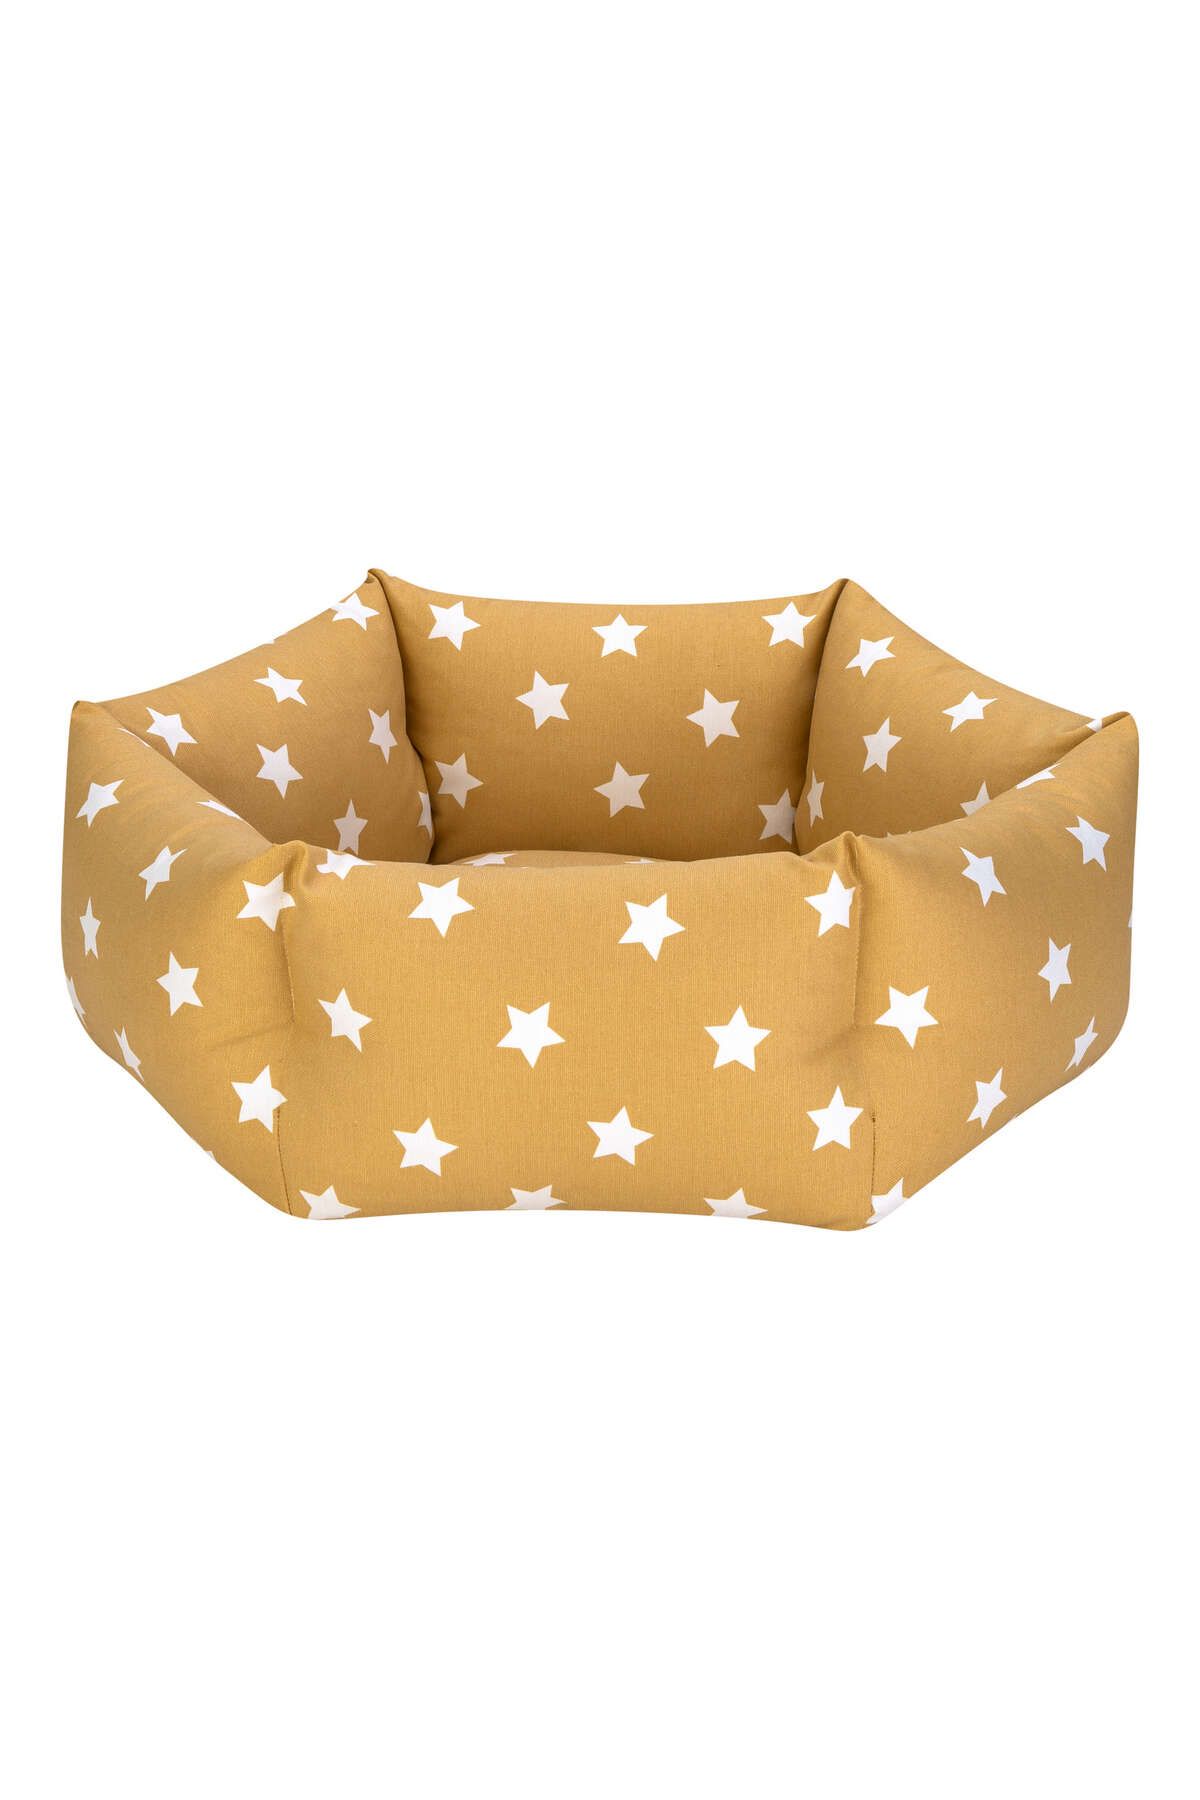 Pet Comfort Tokyo Sarı Star Kedi ve Köpek Yatağı S 50cm 353067